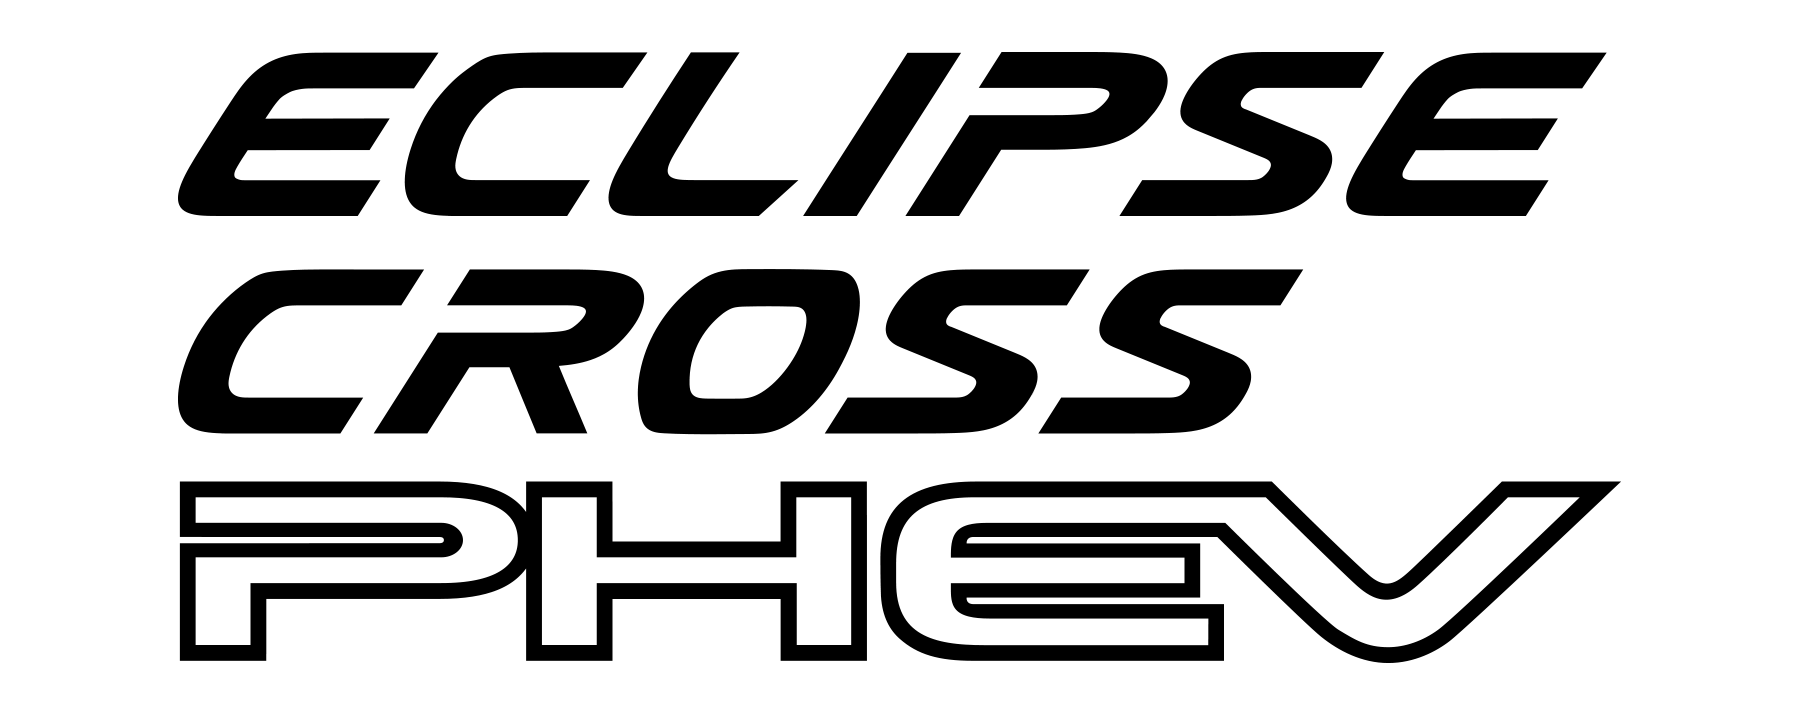 Mitsubishi Eclipse Cross PHEV logo